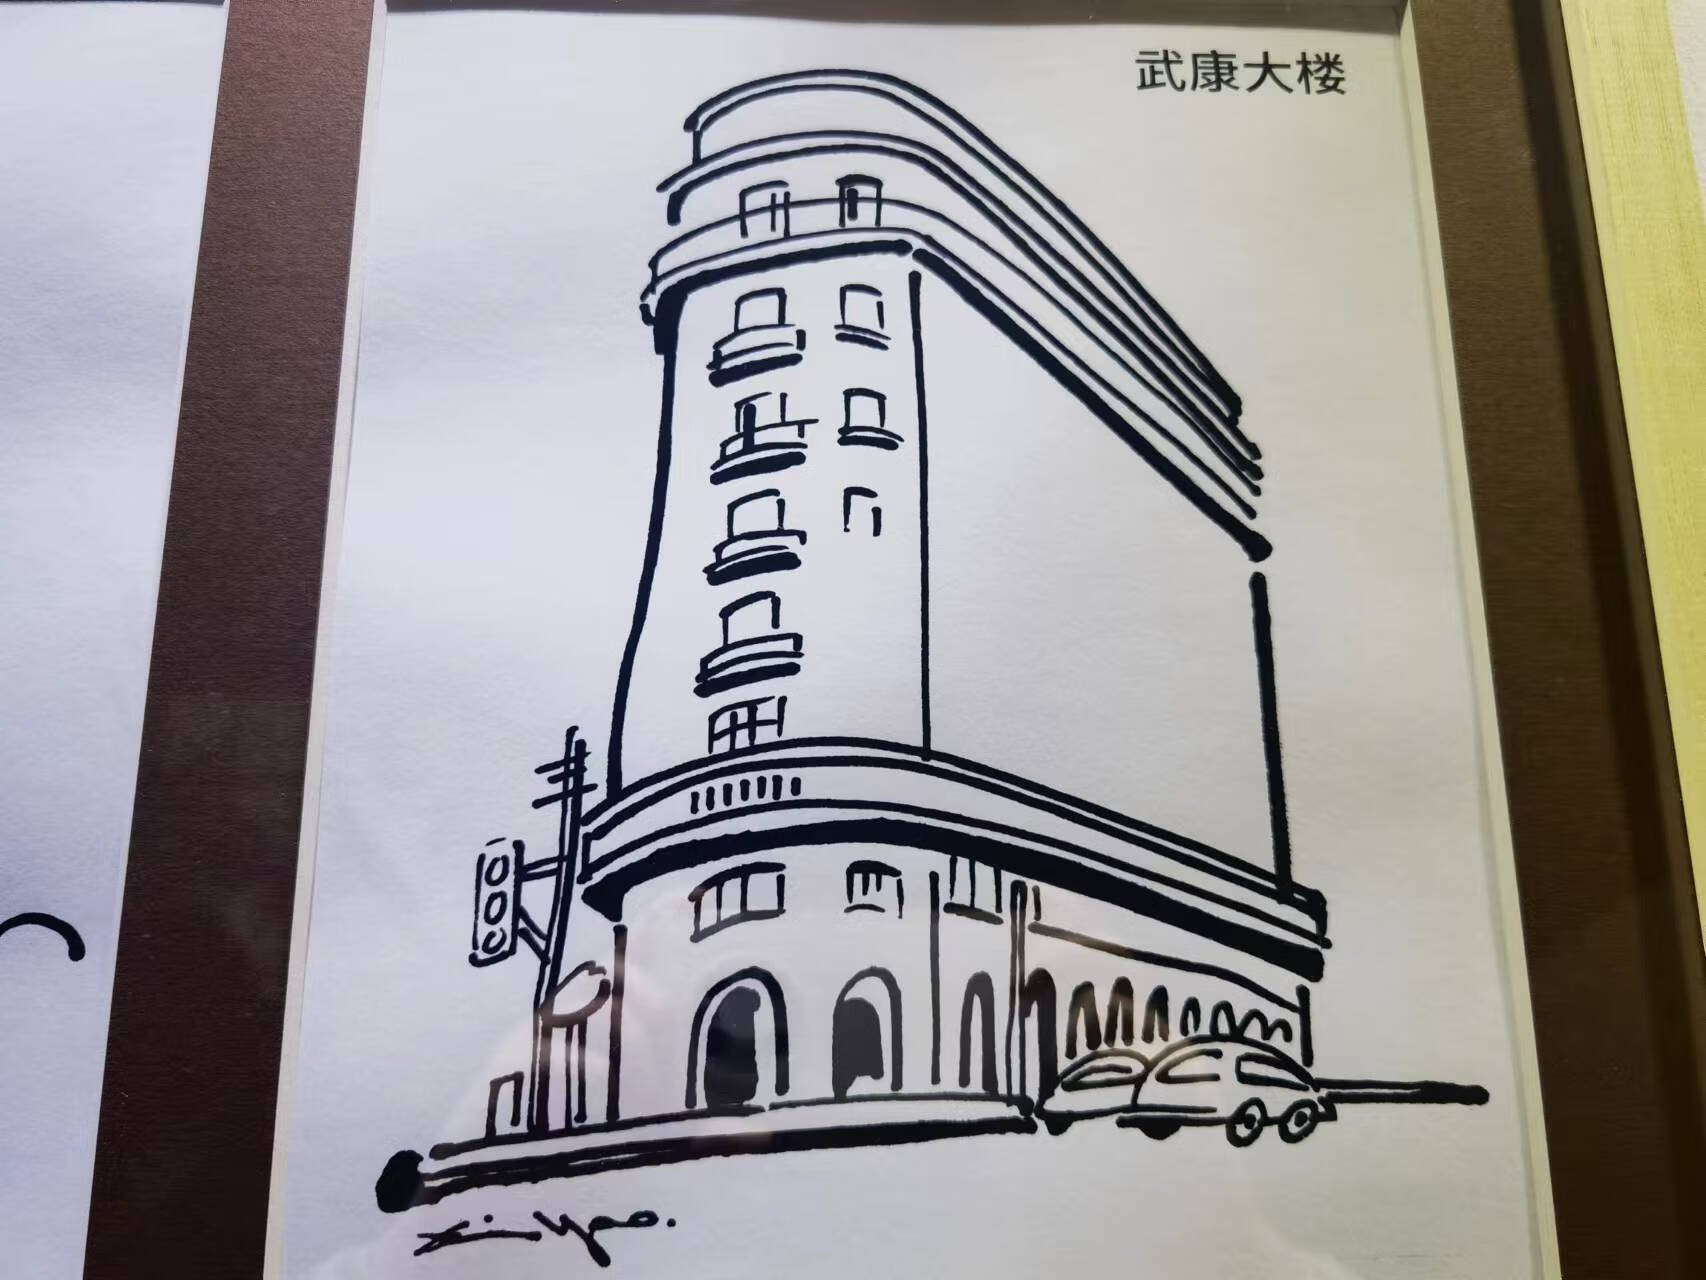 以漫画的视角重新阅读建筑，“老房子遇上漫画家”特展在邬达克纪念馆开幕